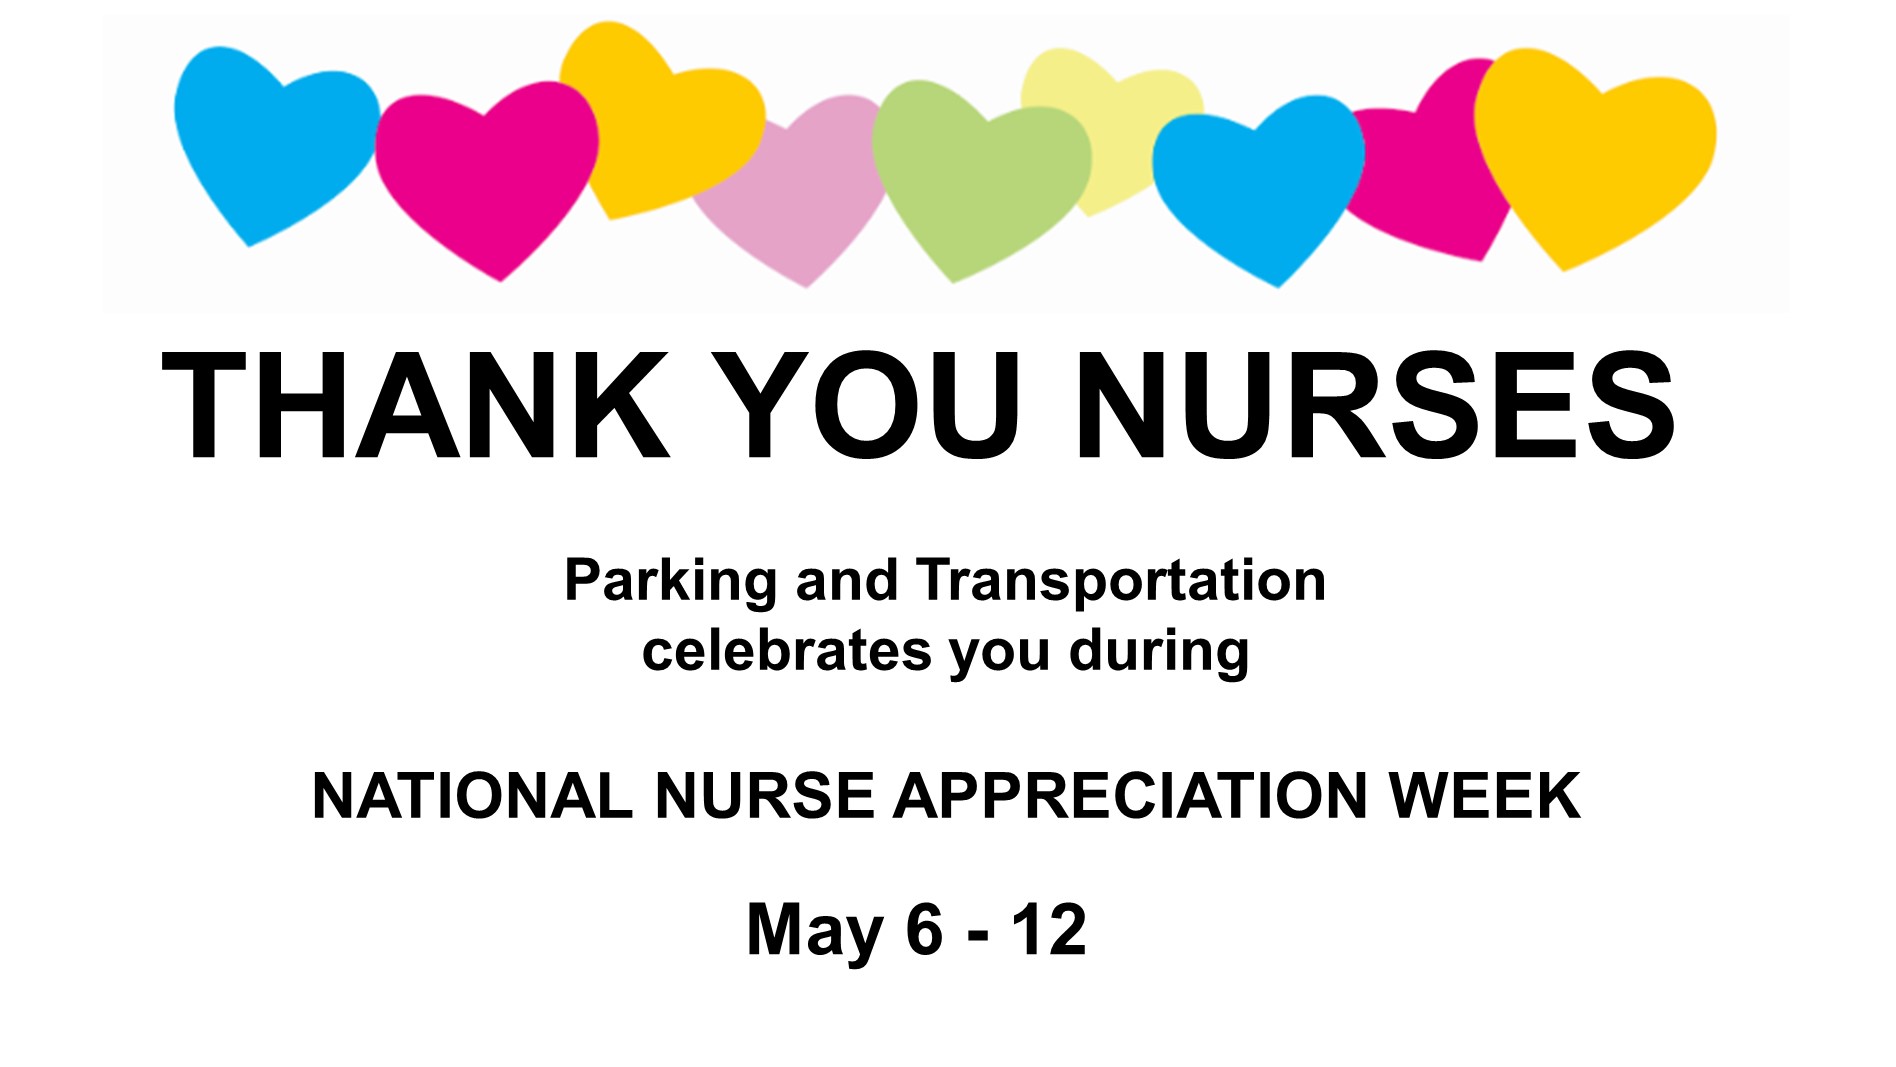 Thank you nurses